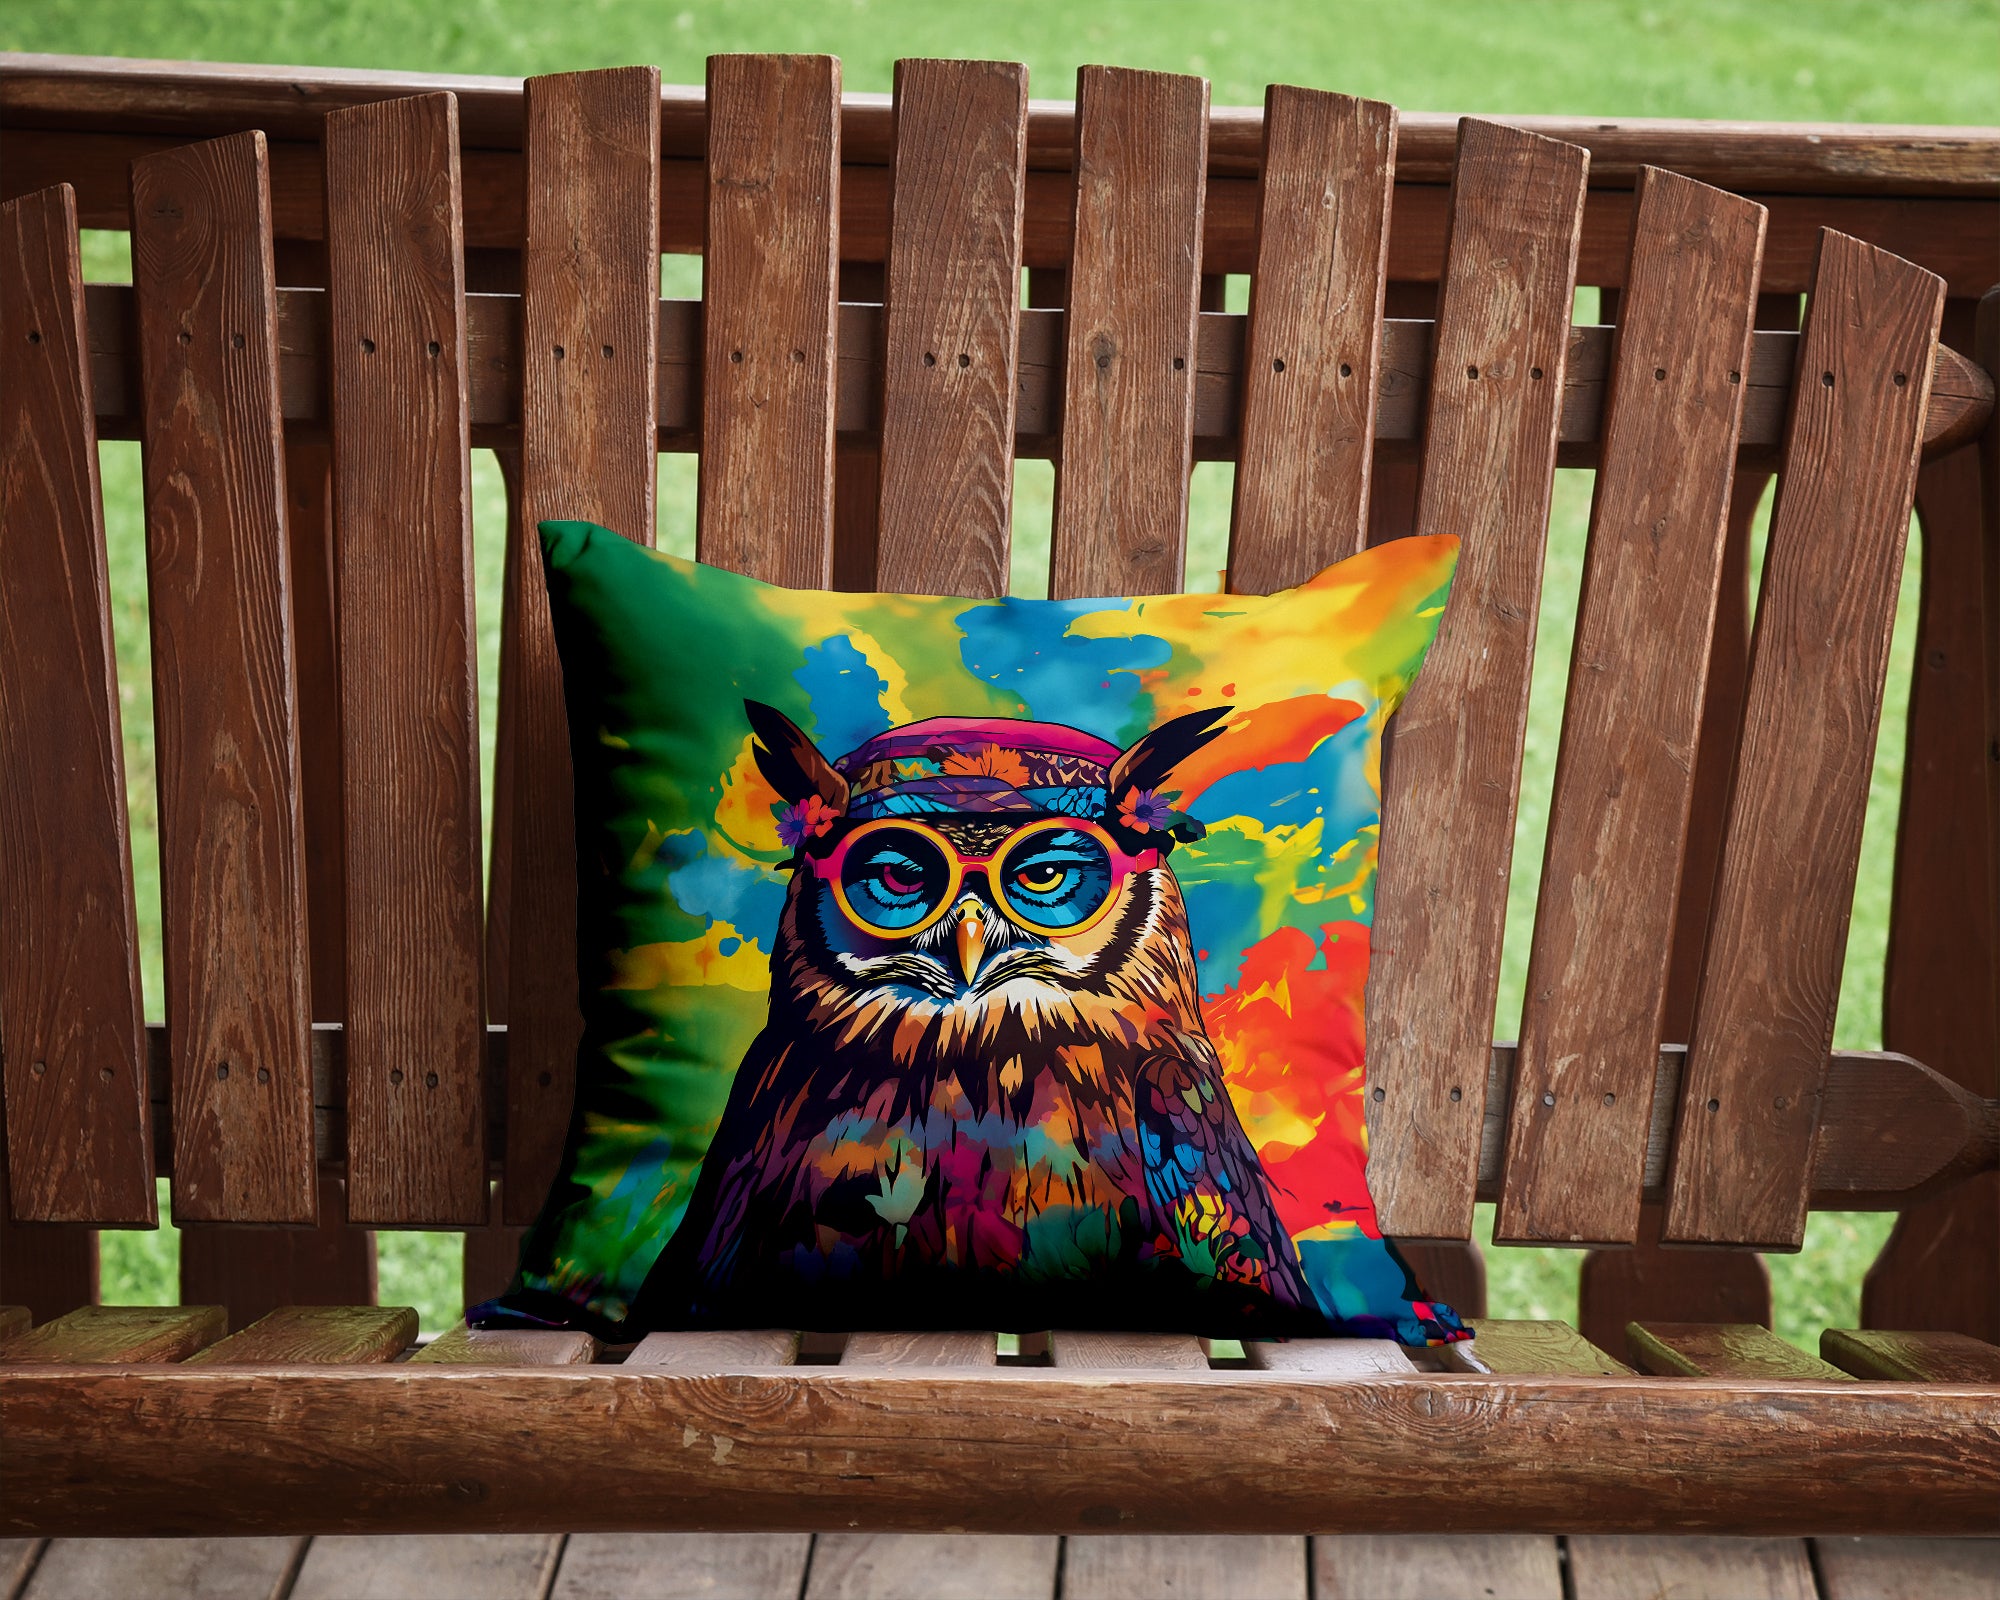 Buy this Hippie Animal Owl Throw Pillow